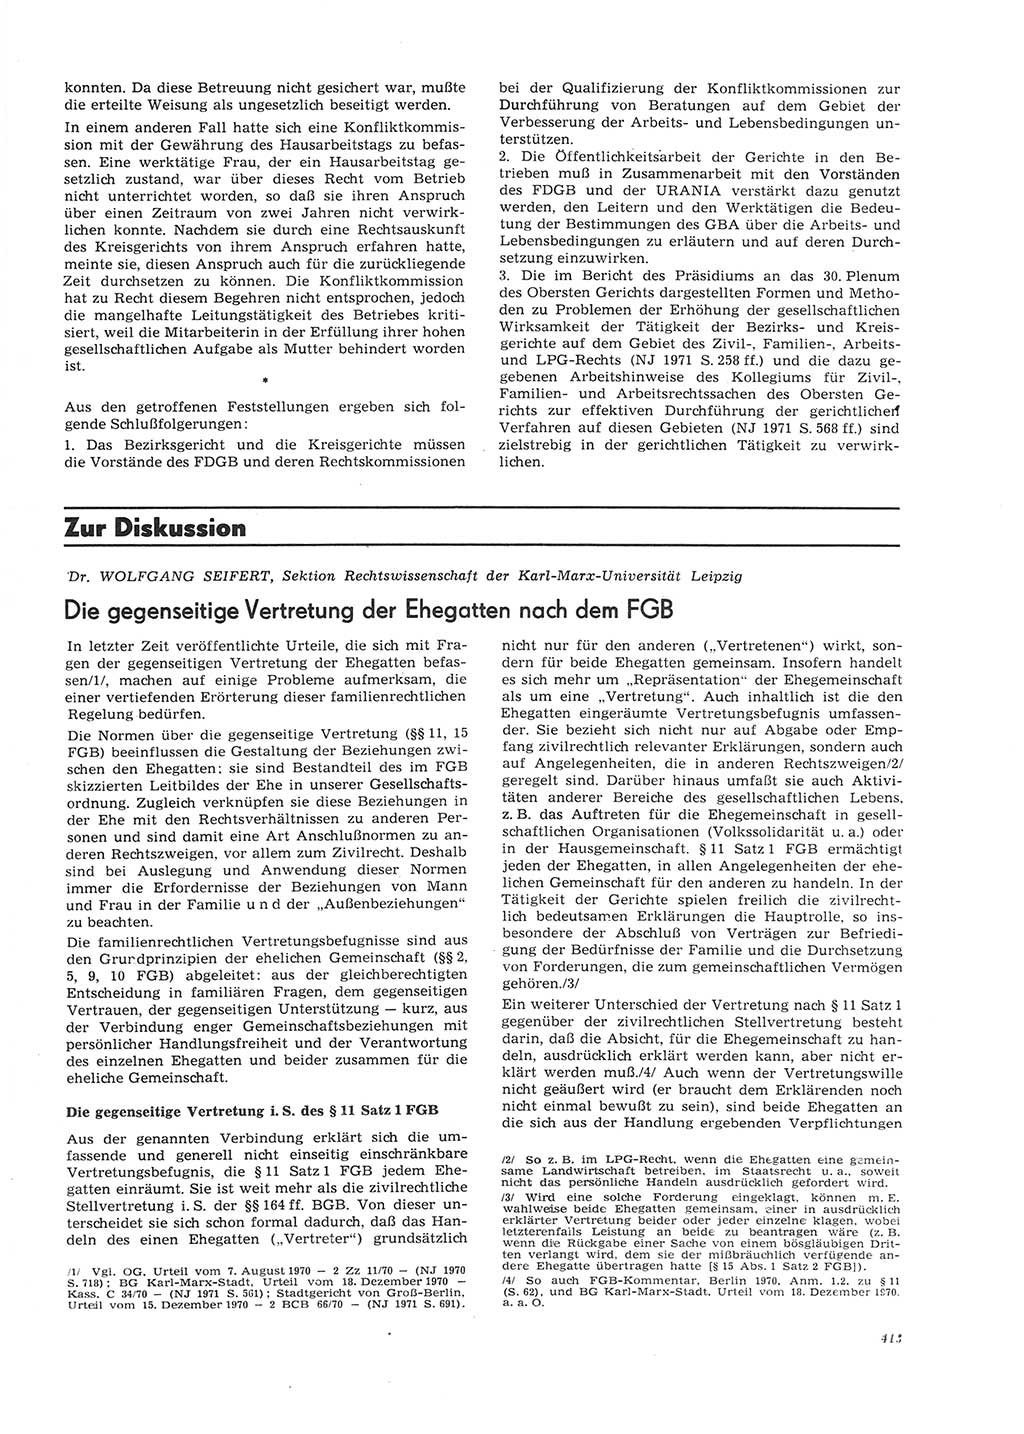 Neue Justiz (NJ), Zeitschrift für Recht und Rechtswissenschaft [Deutsche Demokratische Republik (DDR)], 26. Jahrgang 1972, Seite 413 (NJ DDR 1972, S. 413)